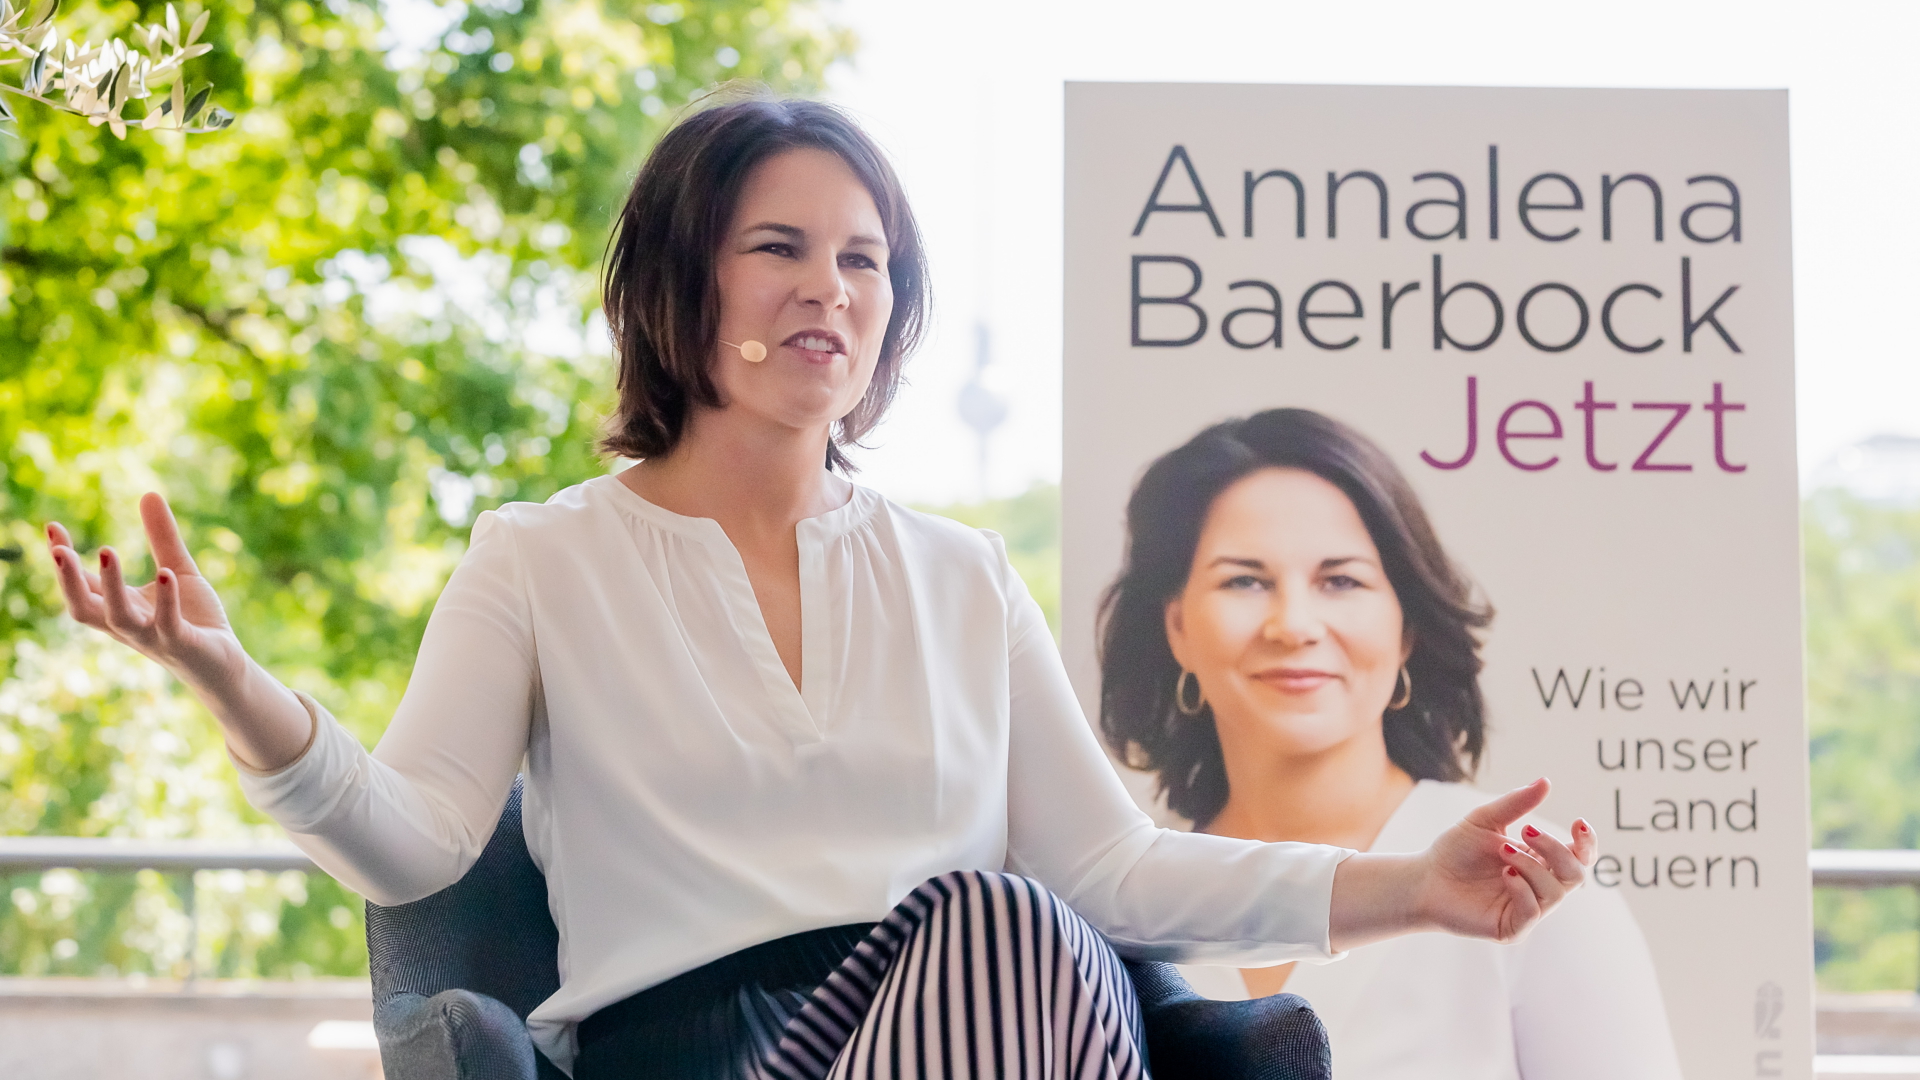 Annalena Baerbock, Kanzlerkandidatin und Bundesvorsitzende von Bündnis 90/Die Grünen, spricht bei der Vorstellung ihres Buches "Jetzt. Wie wir unser Land erneuern" | dpa